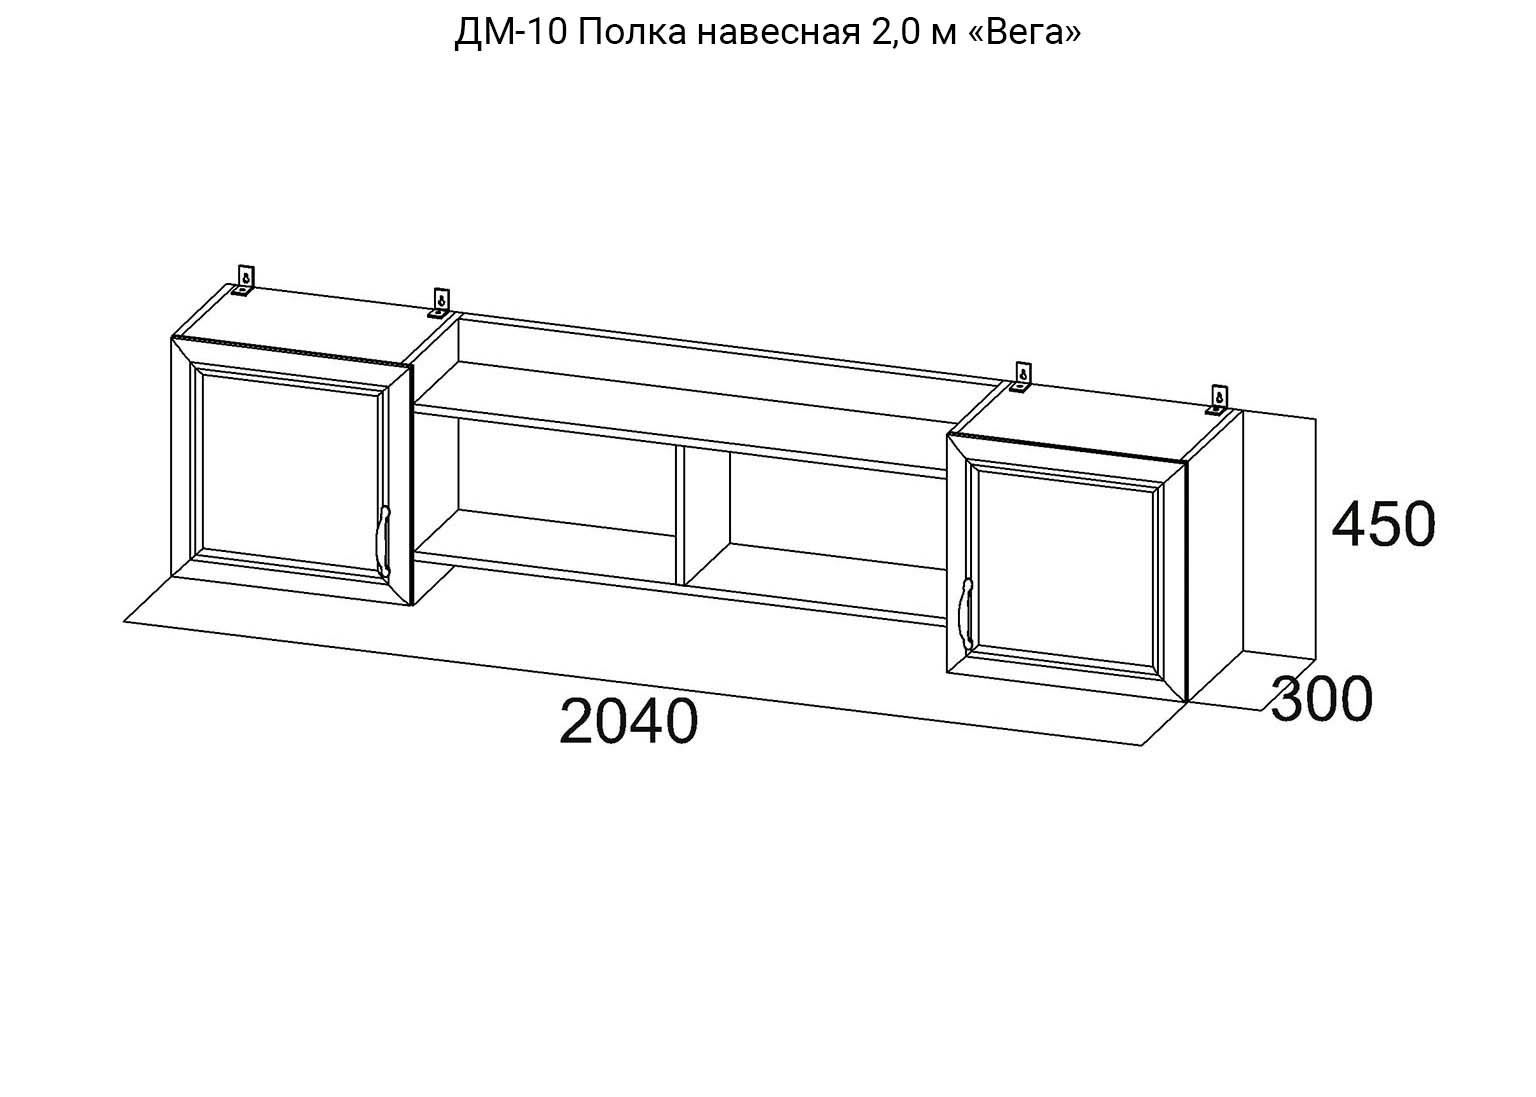 Детская Вега ДМ-10 Полка навесная 2,0м схема SV-Мебель